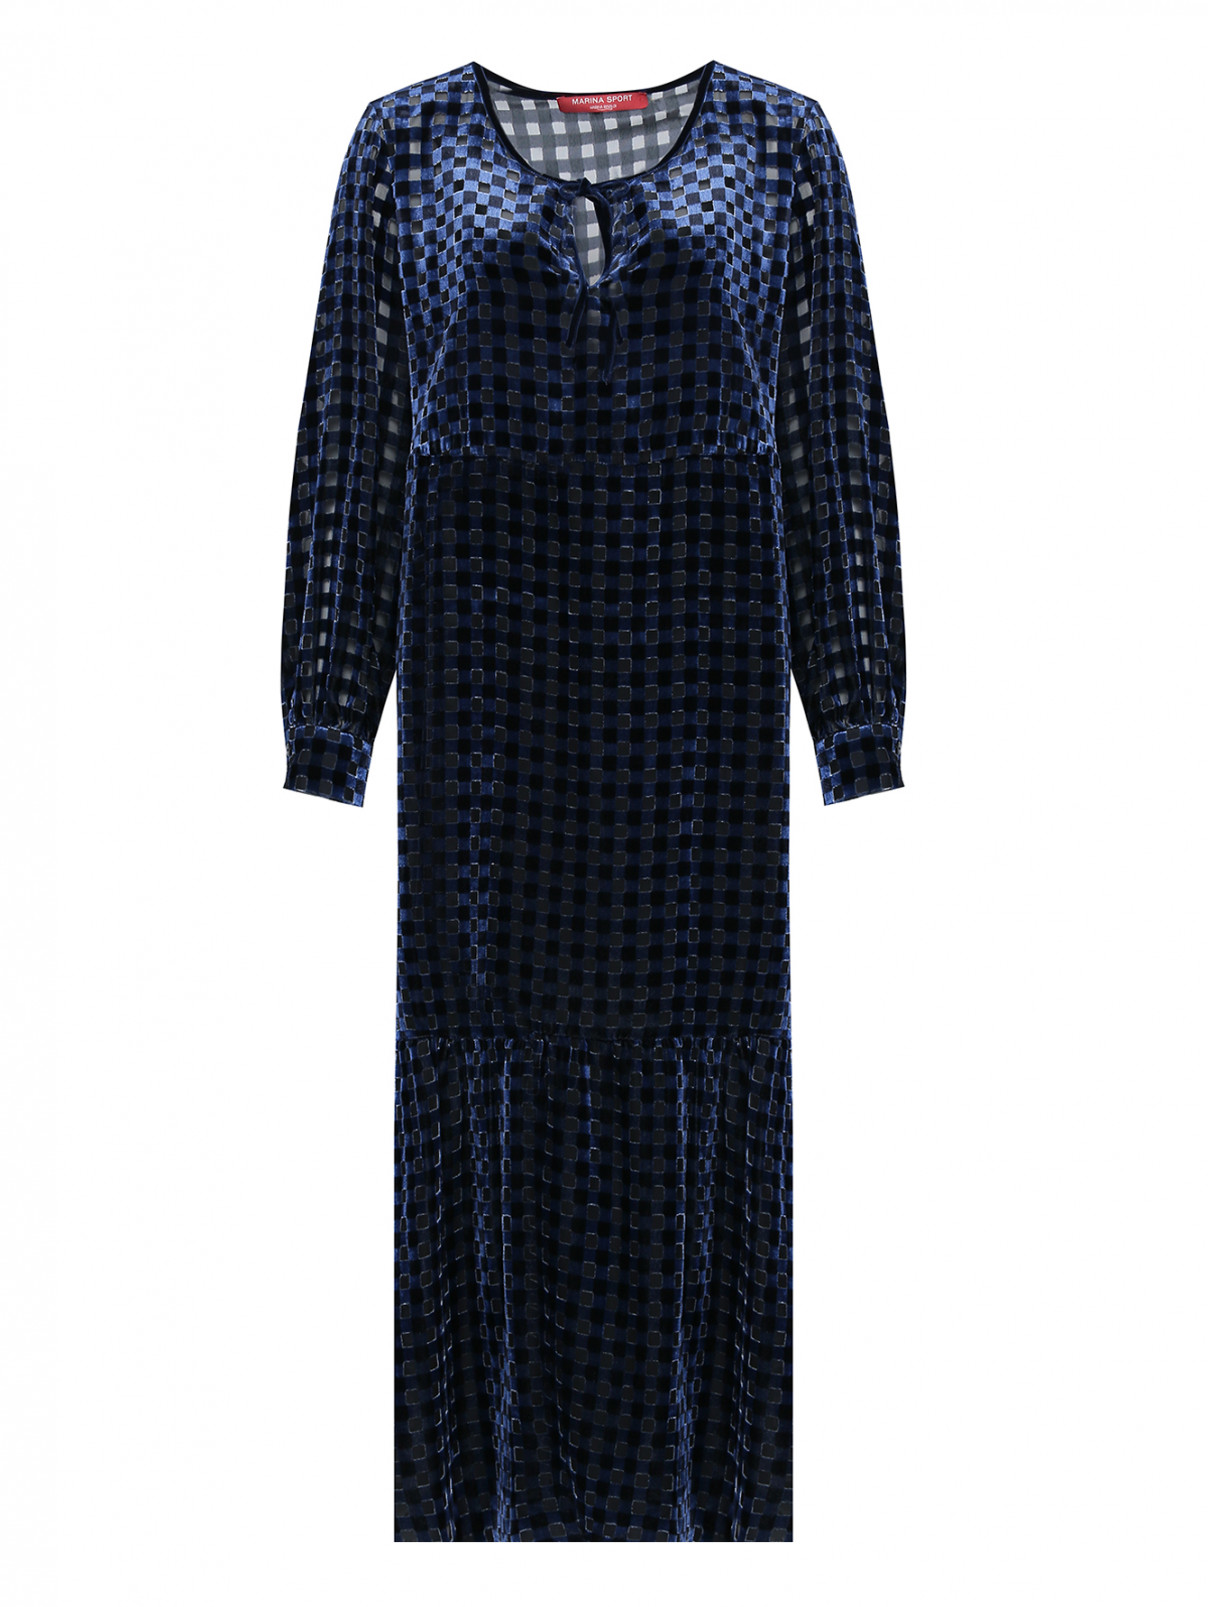 Платье из вискозы со сборкой, с узором клетка Marina Rinaldi  –  Общий вид  – Цвет:  Синий